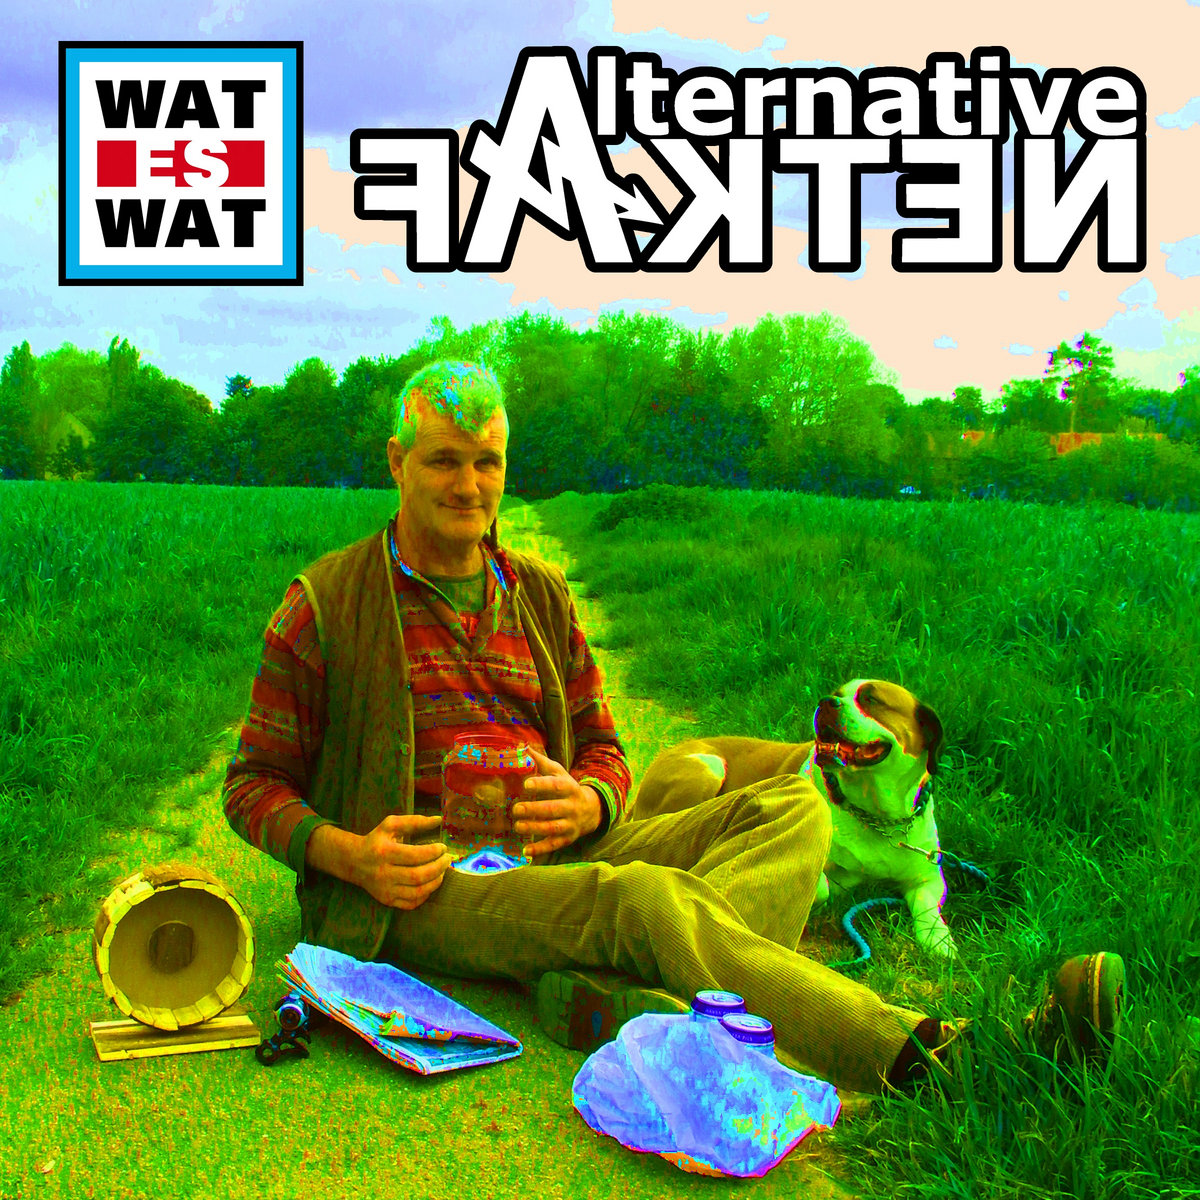 Alternative Fakten - WAT ES WAT